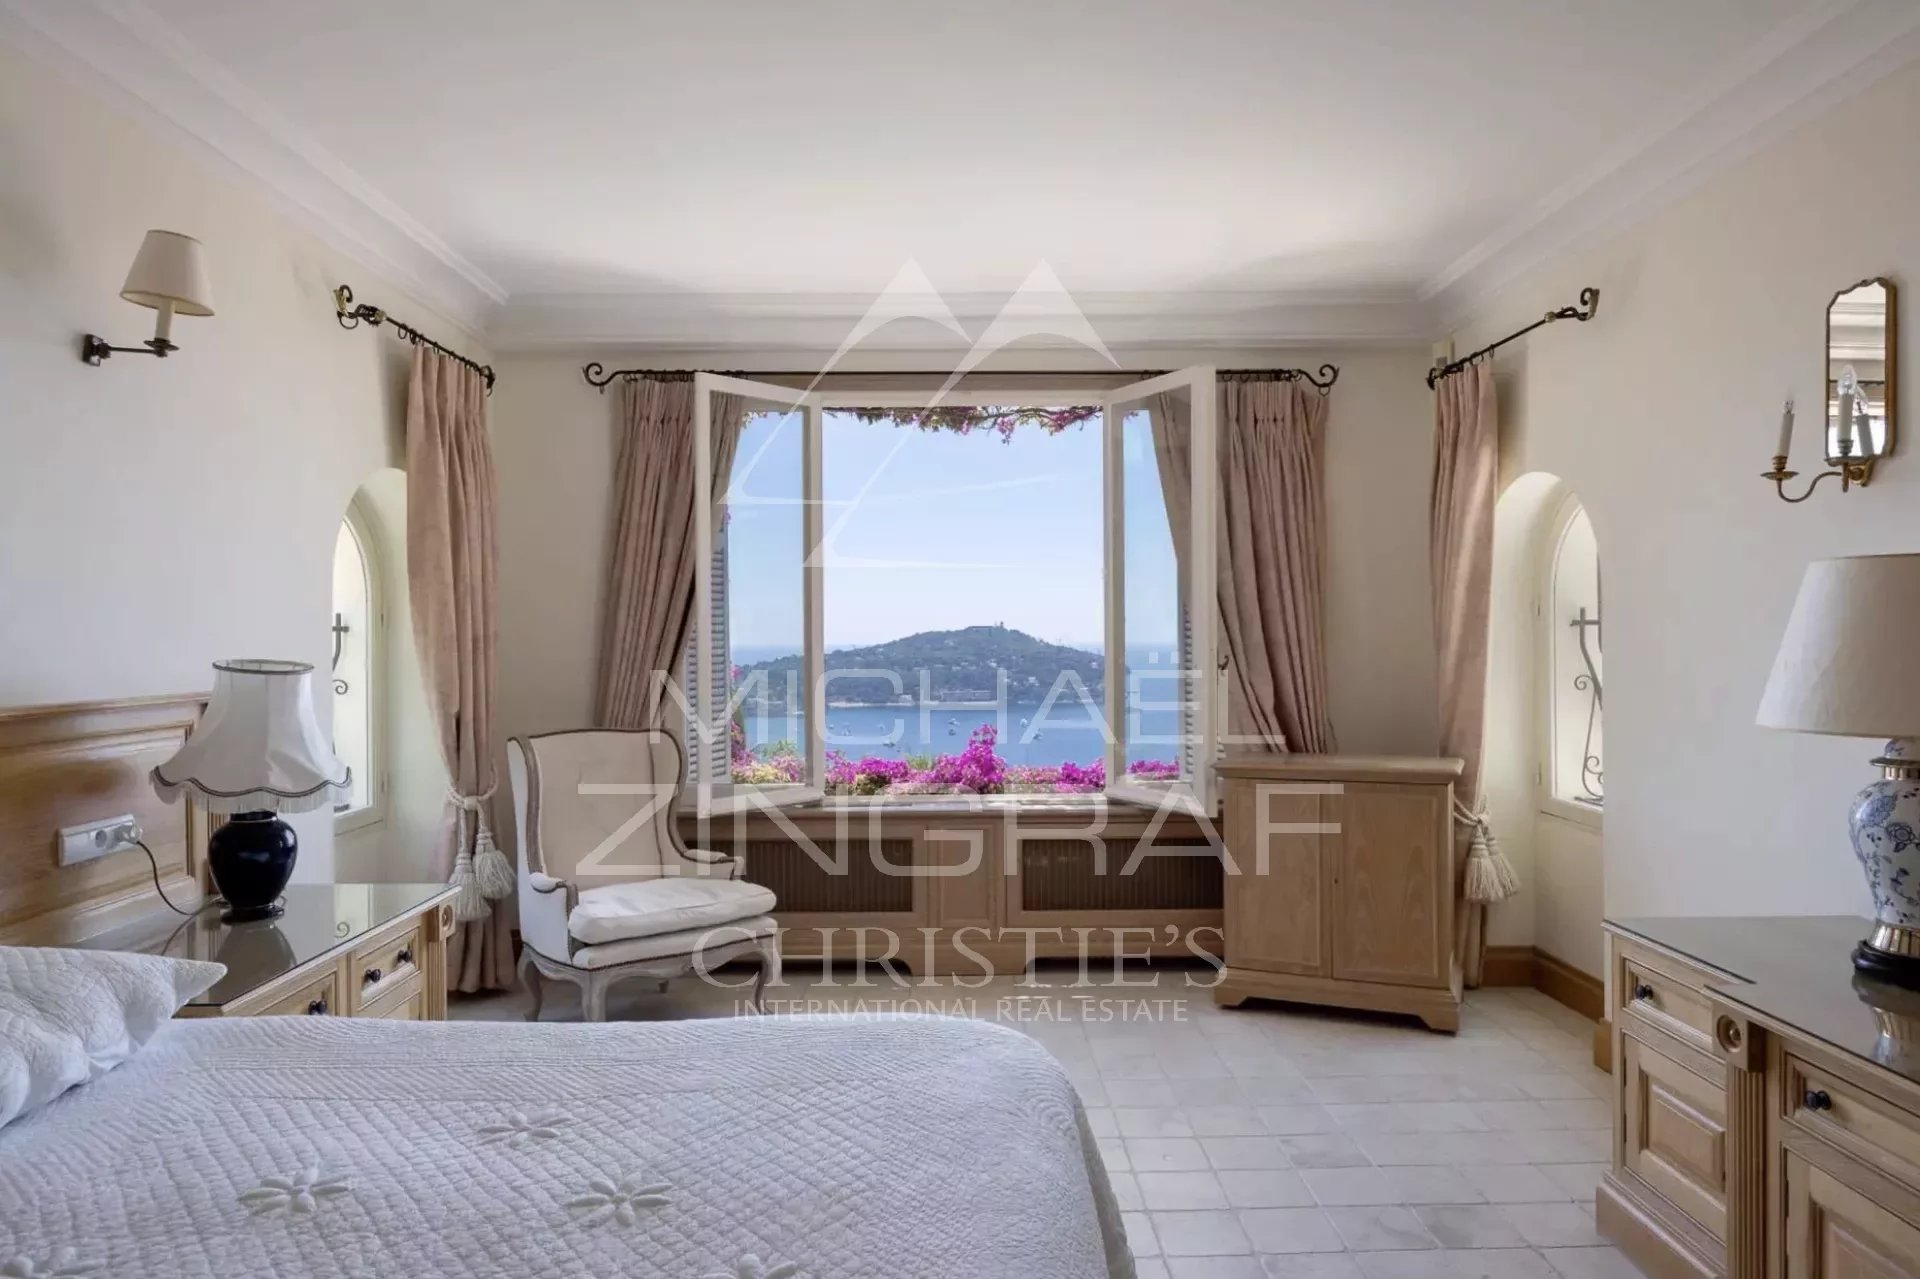 Villa de charme avec vue mer panoramique